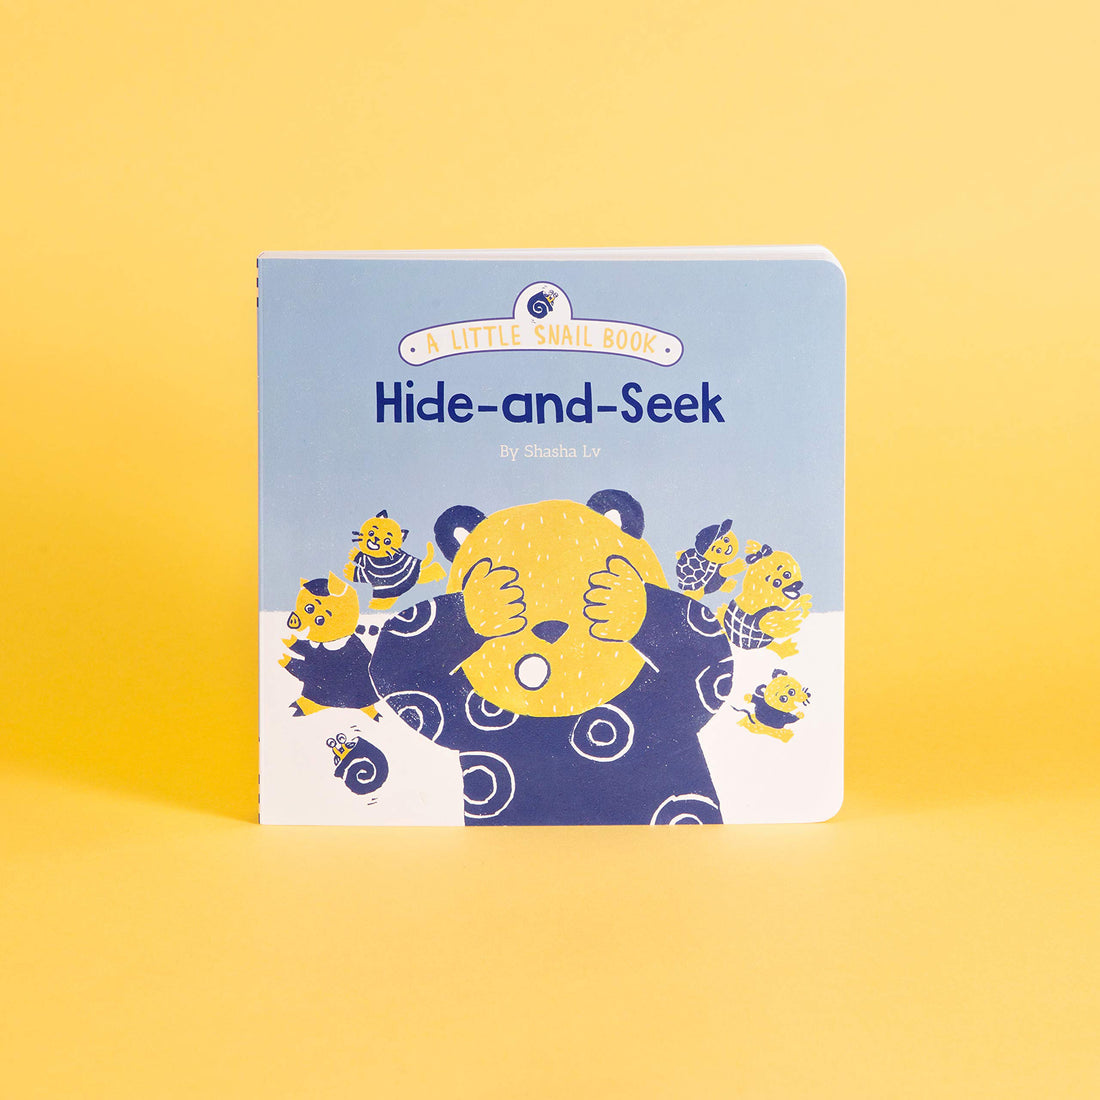 book-little-snail-book-hide-and-seek- (5)